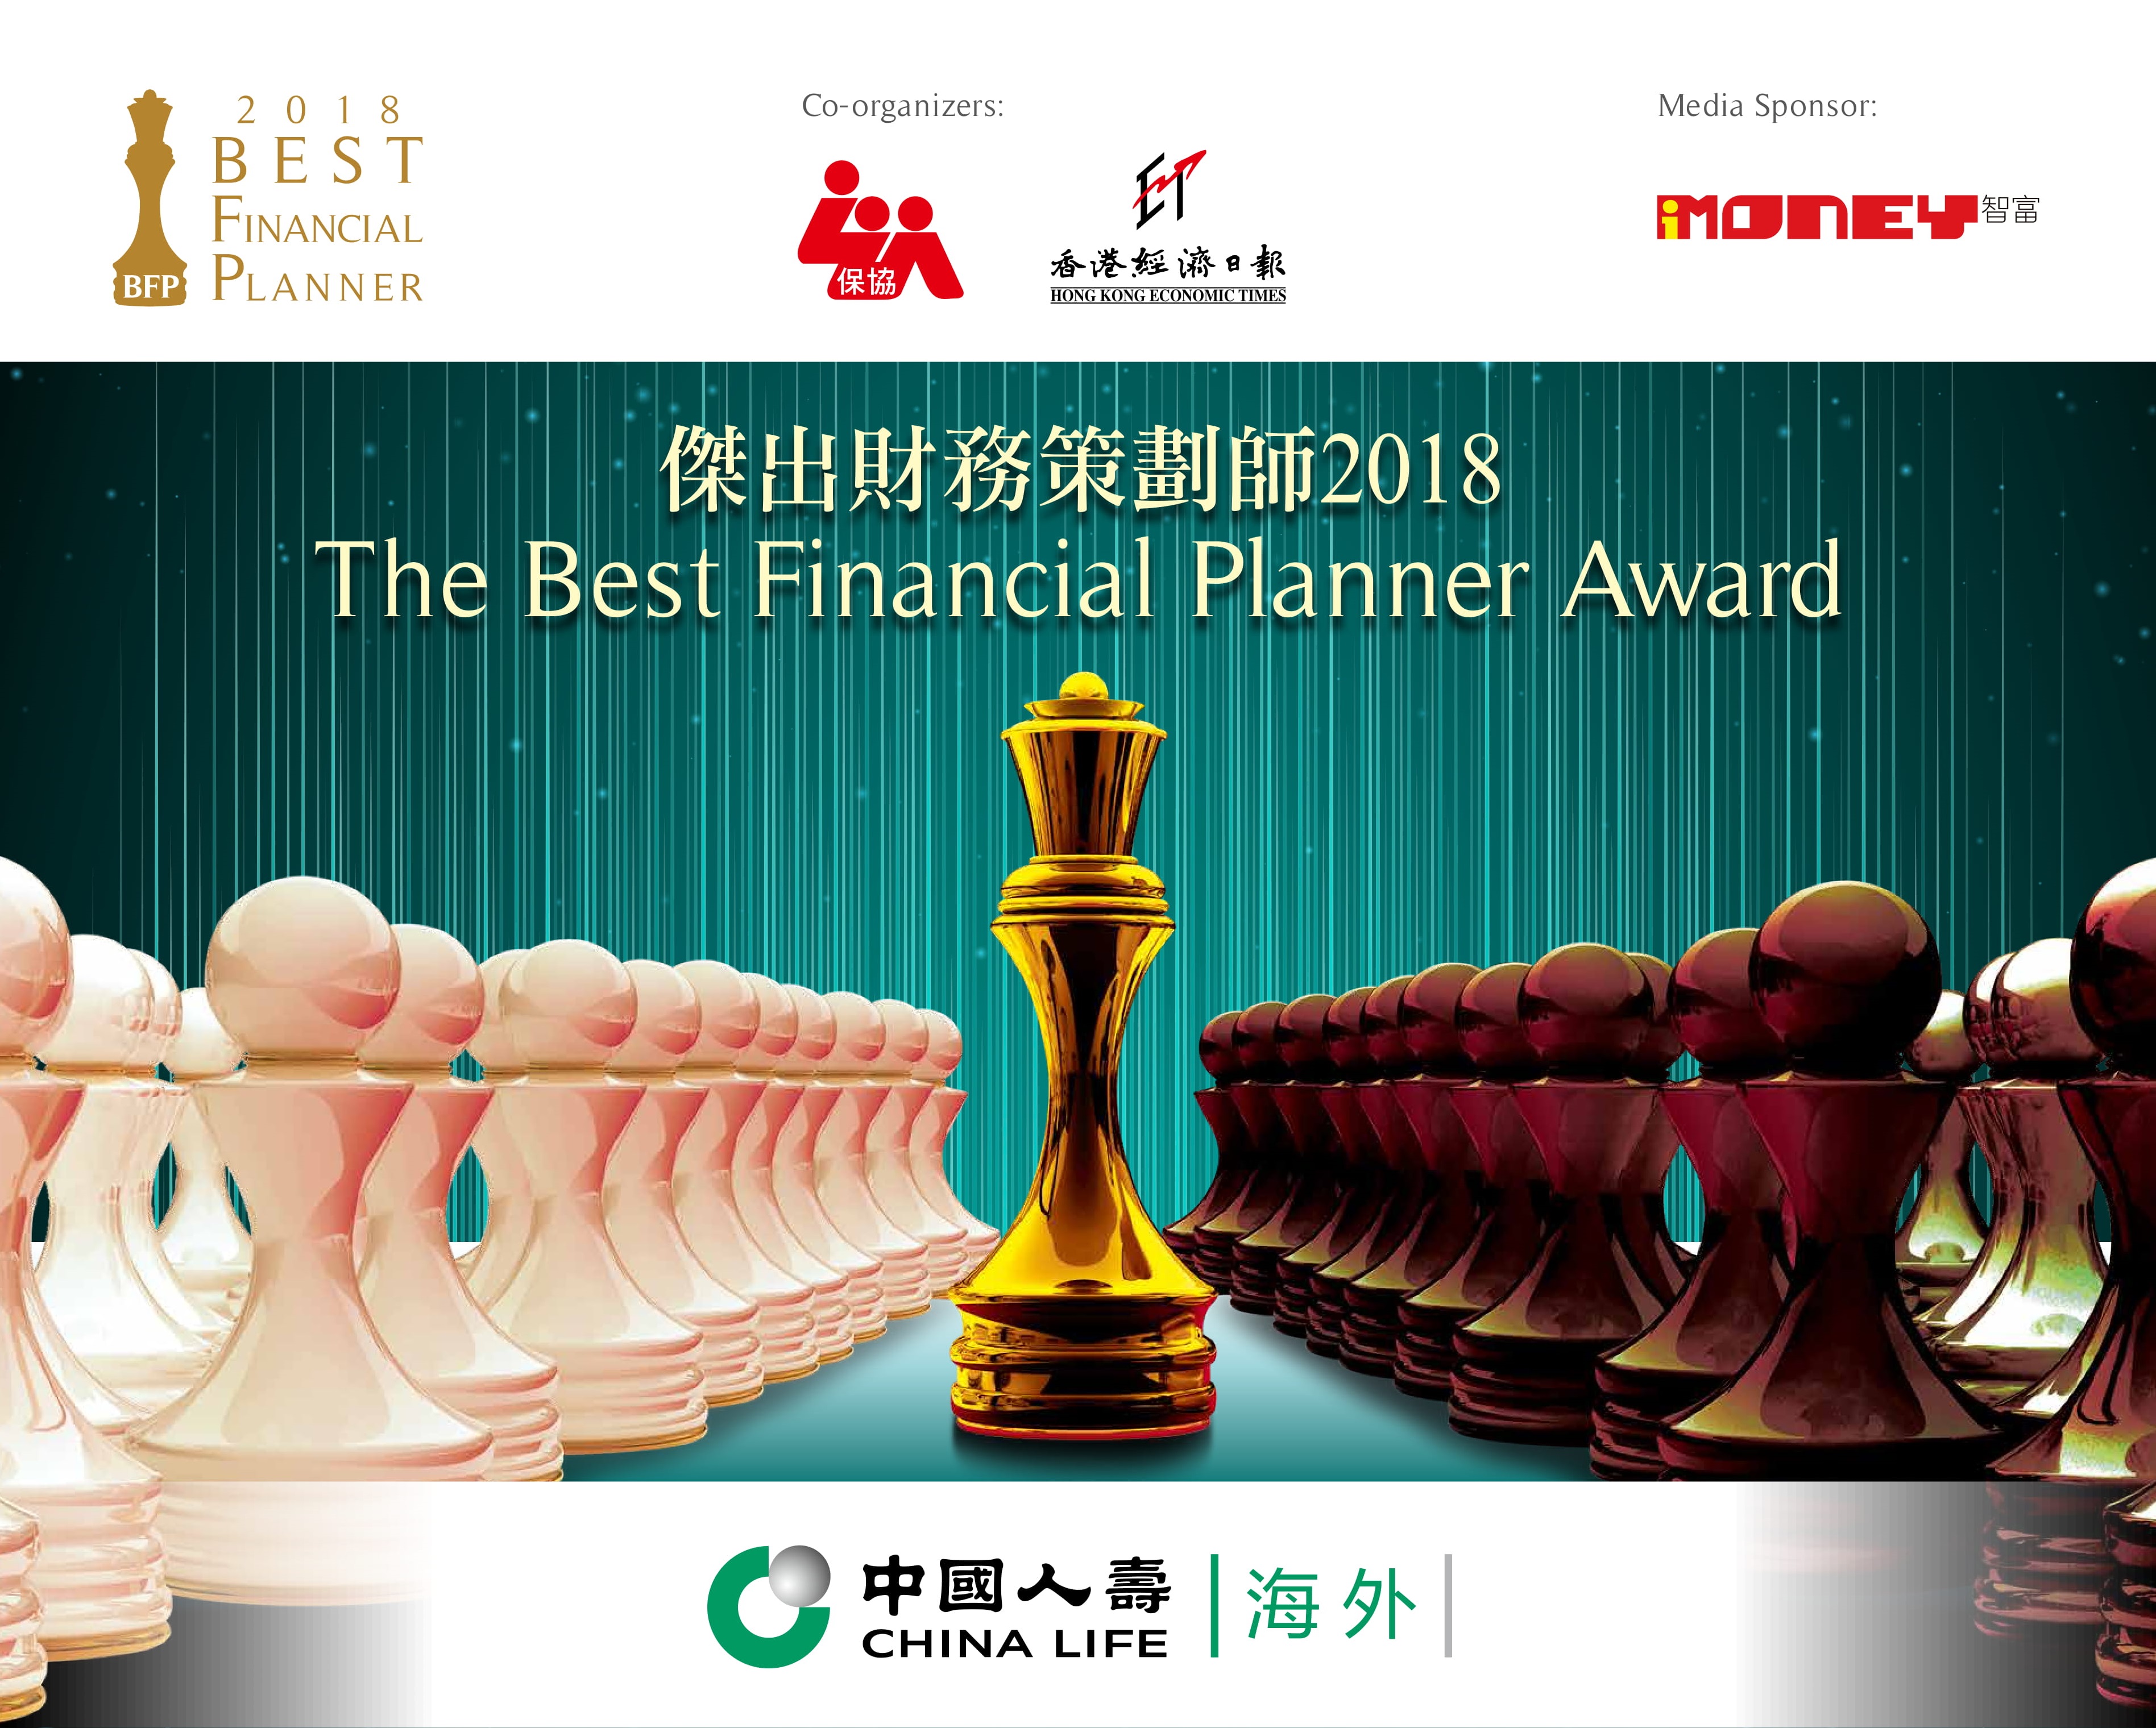 中国人寿（海外）获香港人寿保险从业员协会颁发「最杰出财务策划公司大奖」